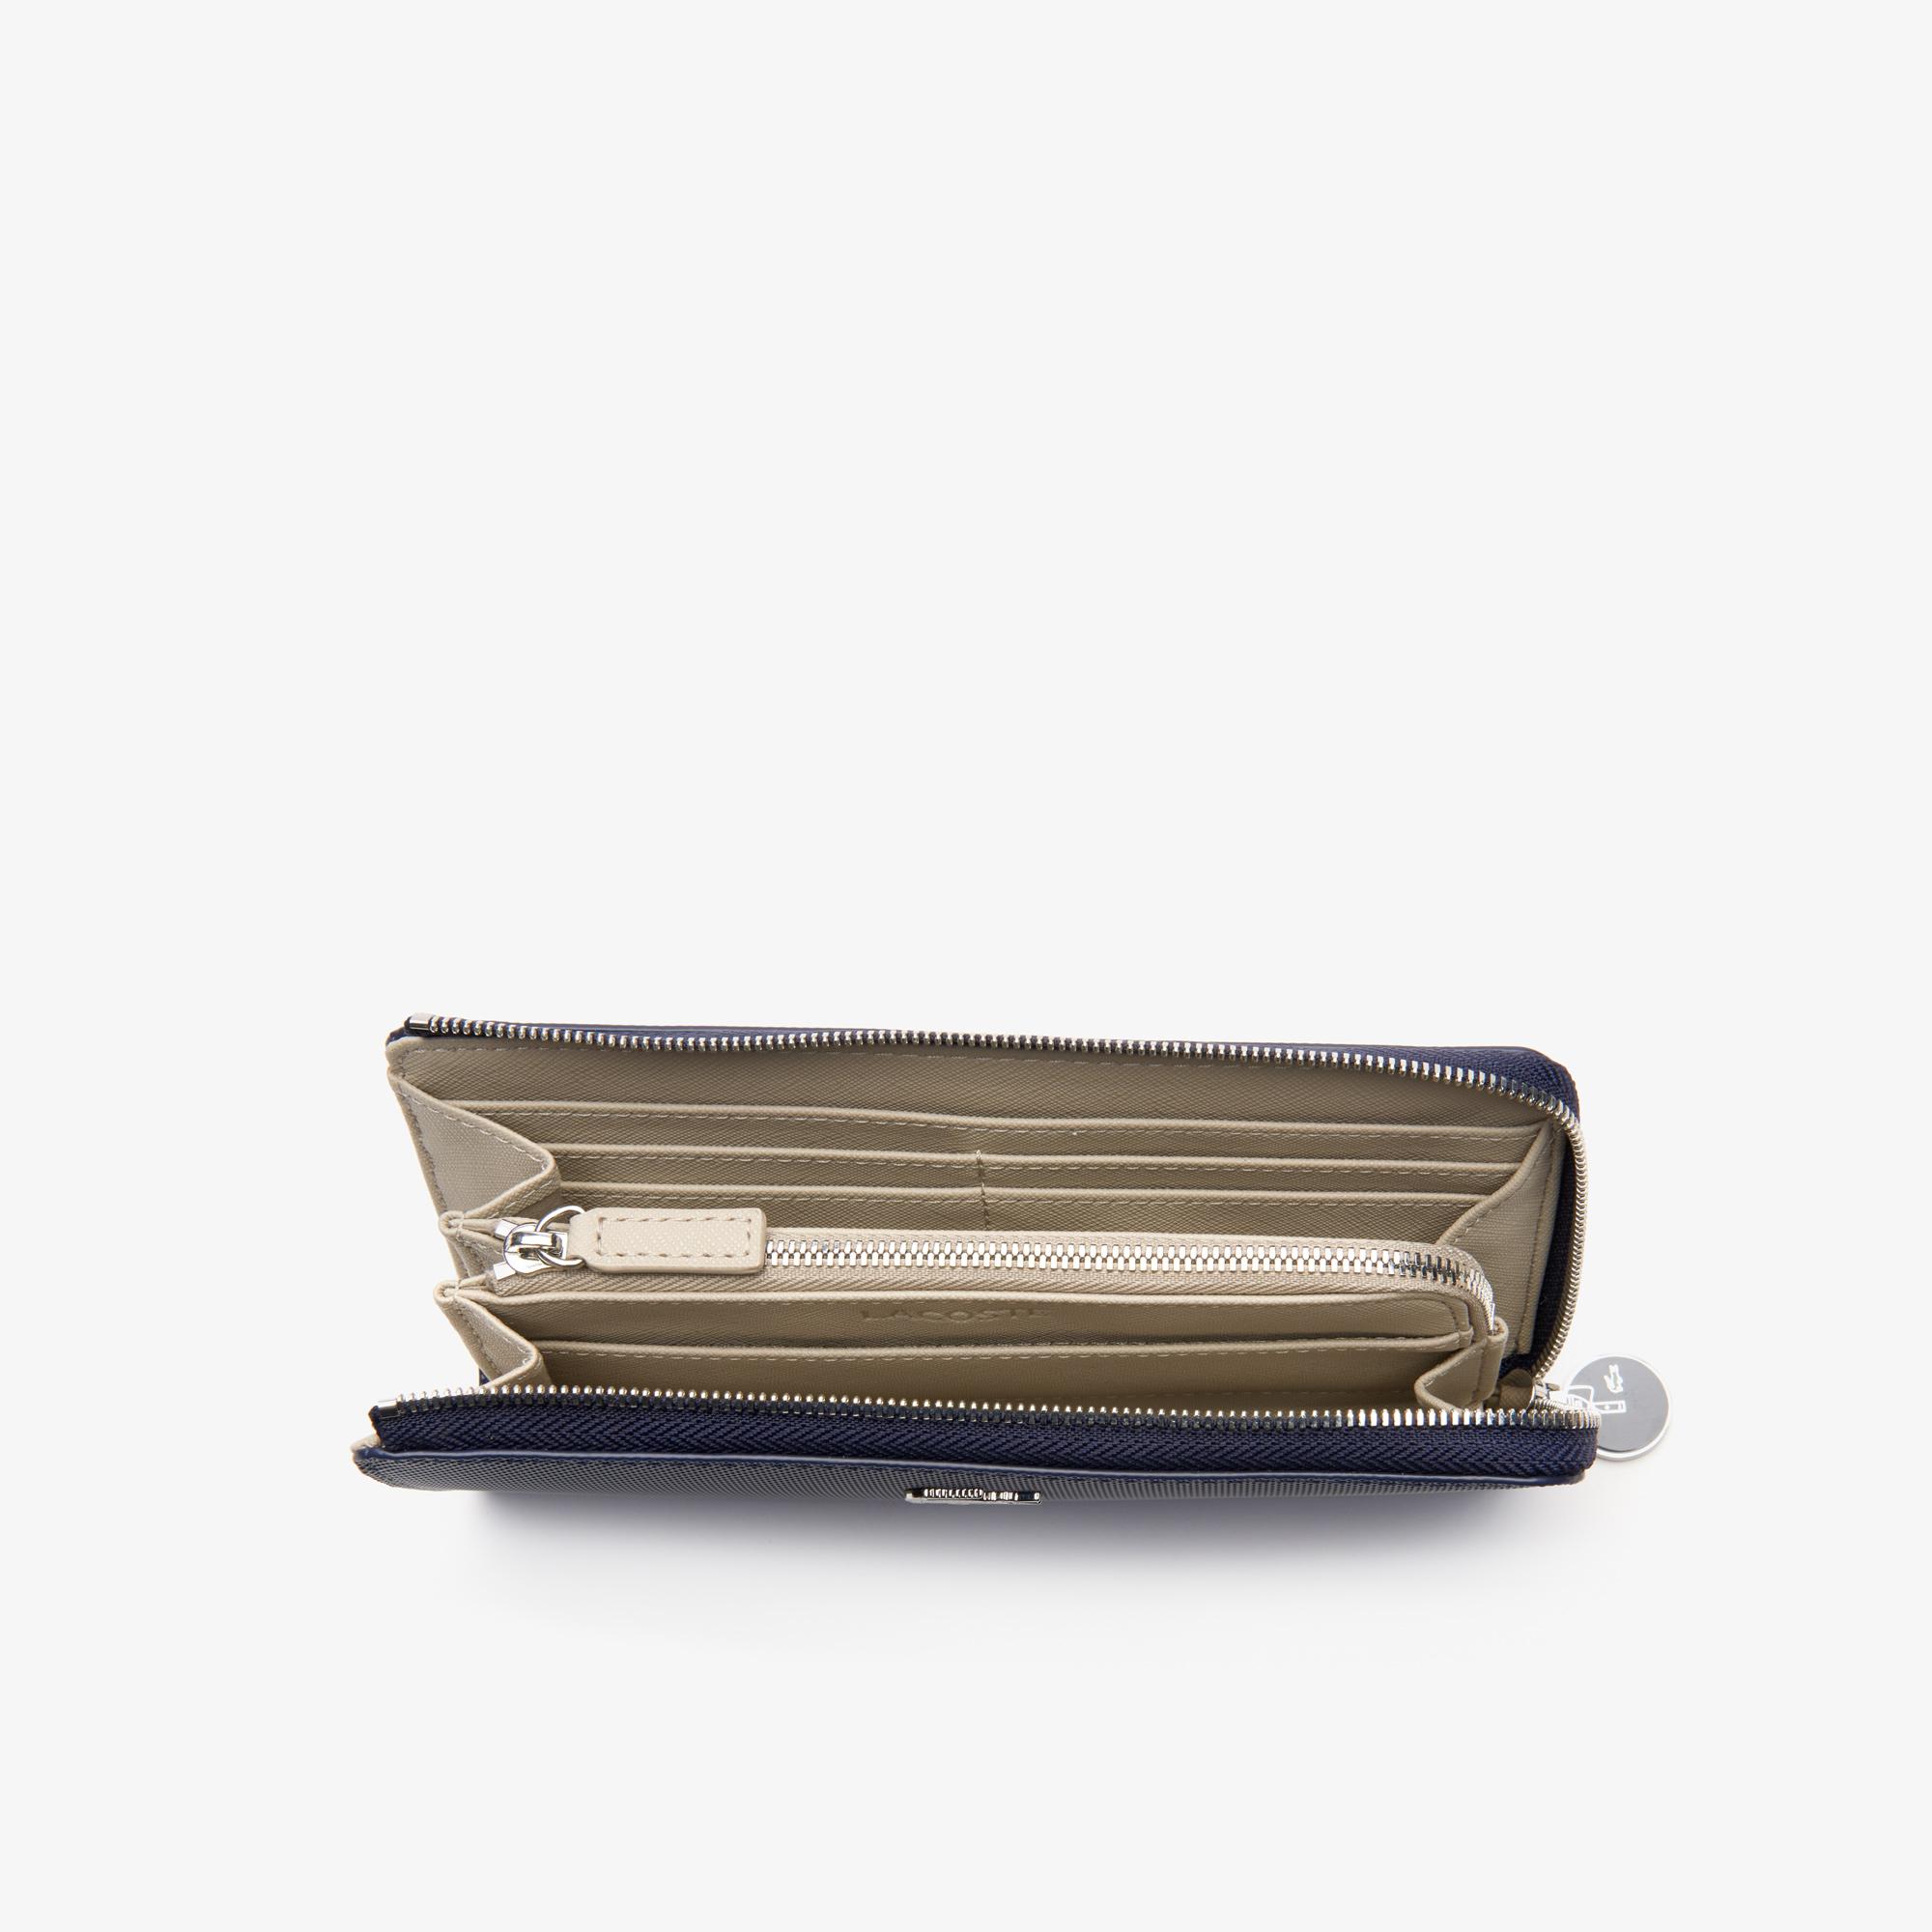 Lacoste Damski klasyczny portfel na co dzień obszyty płótnem typu pika na 10 kart z zamkiem błyskawicznym